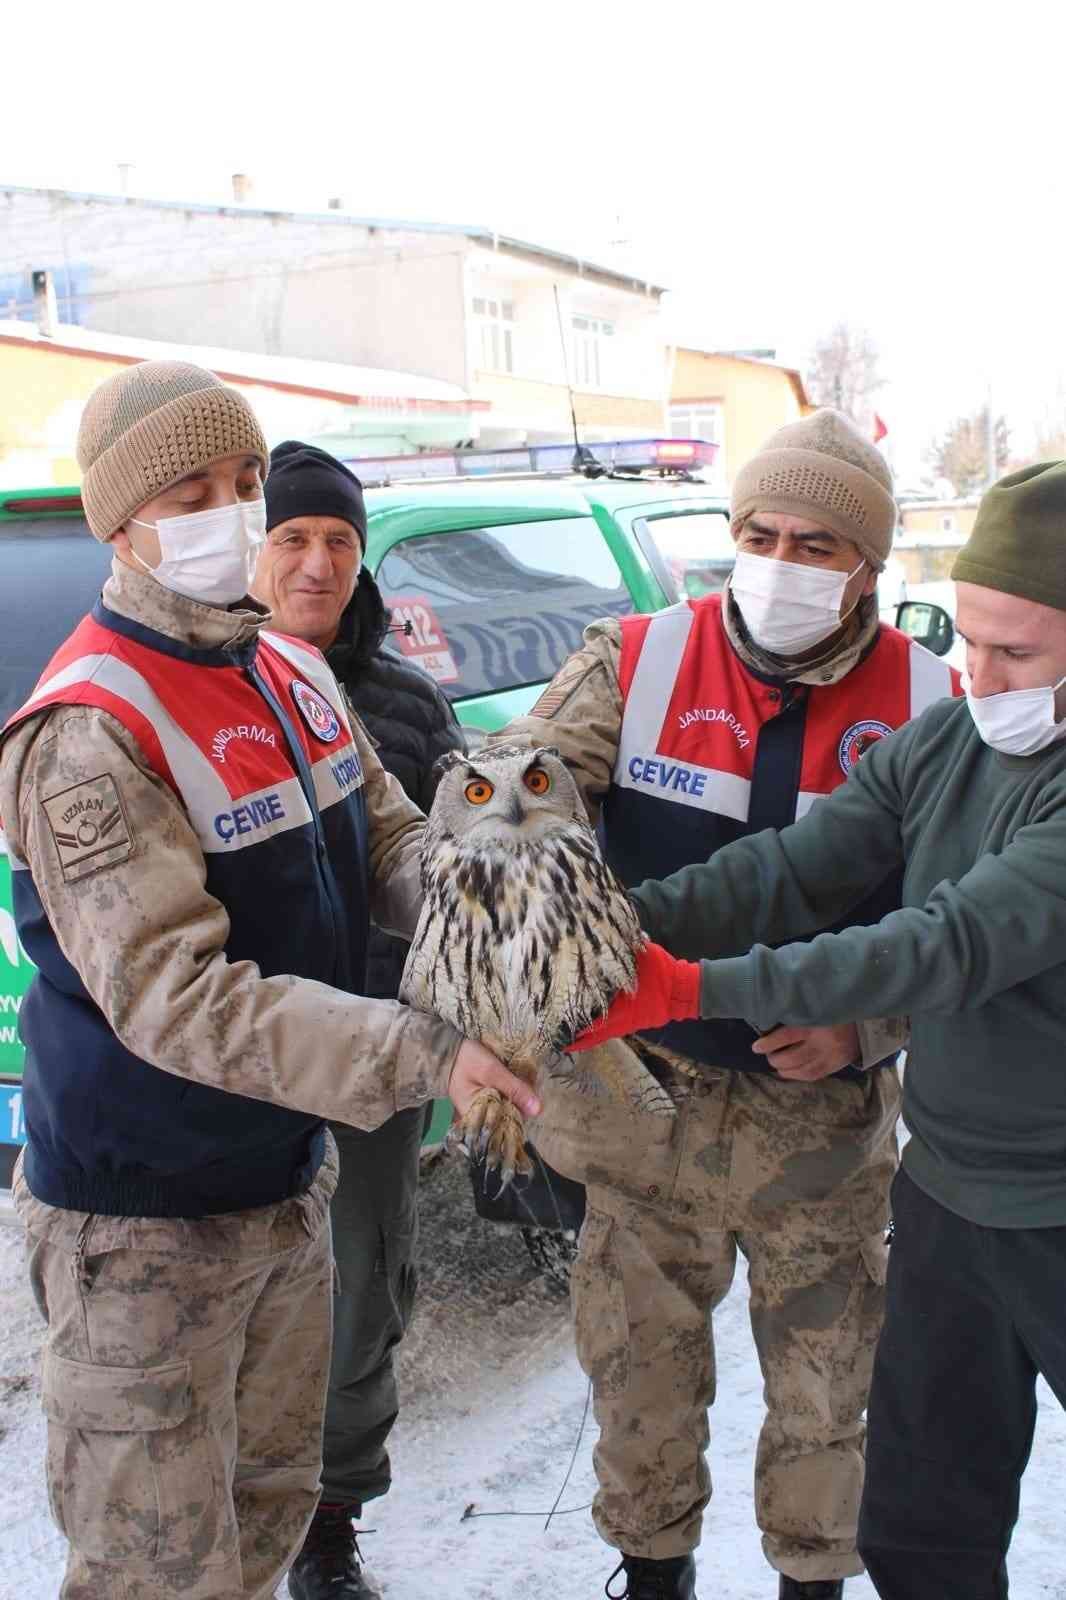 Yaralı ve donmak üzere olan Puhu kuşu tedavi altına alındı #ardahan